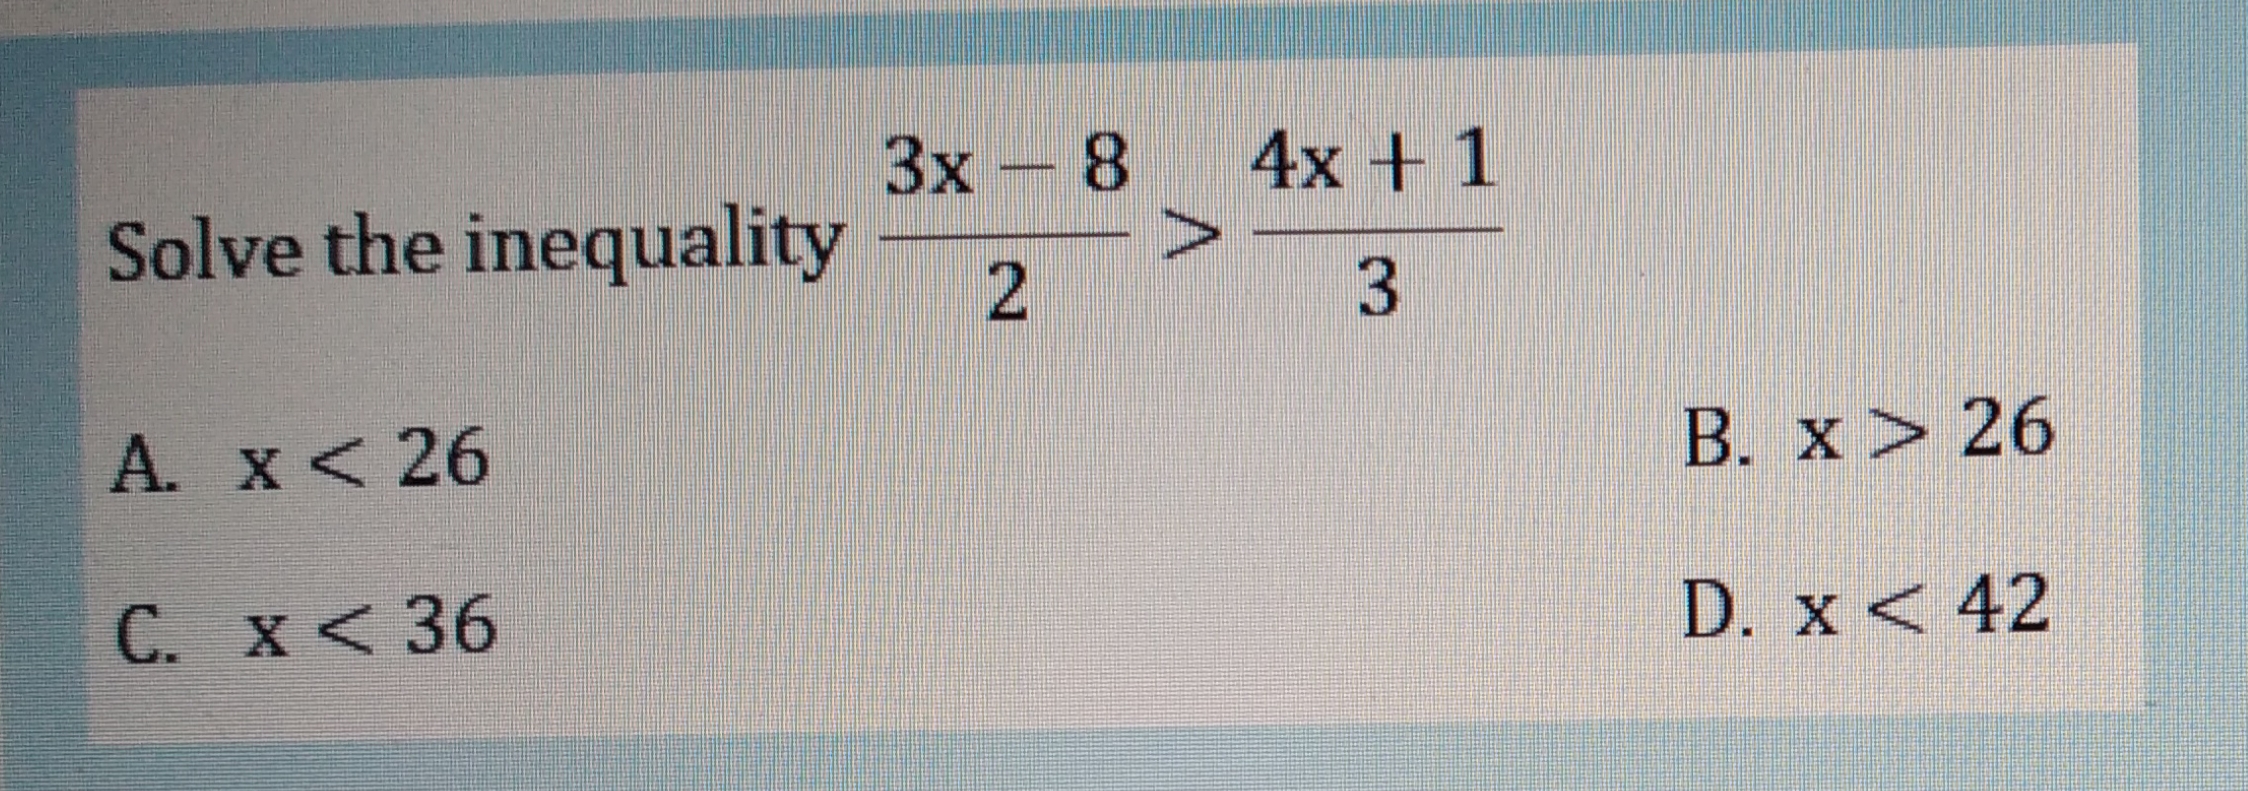 Зх- 8
4x + 1
Solve the inequality
3.
A. x< 26
B. x> 26
C. x < 36
D. x < 42
